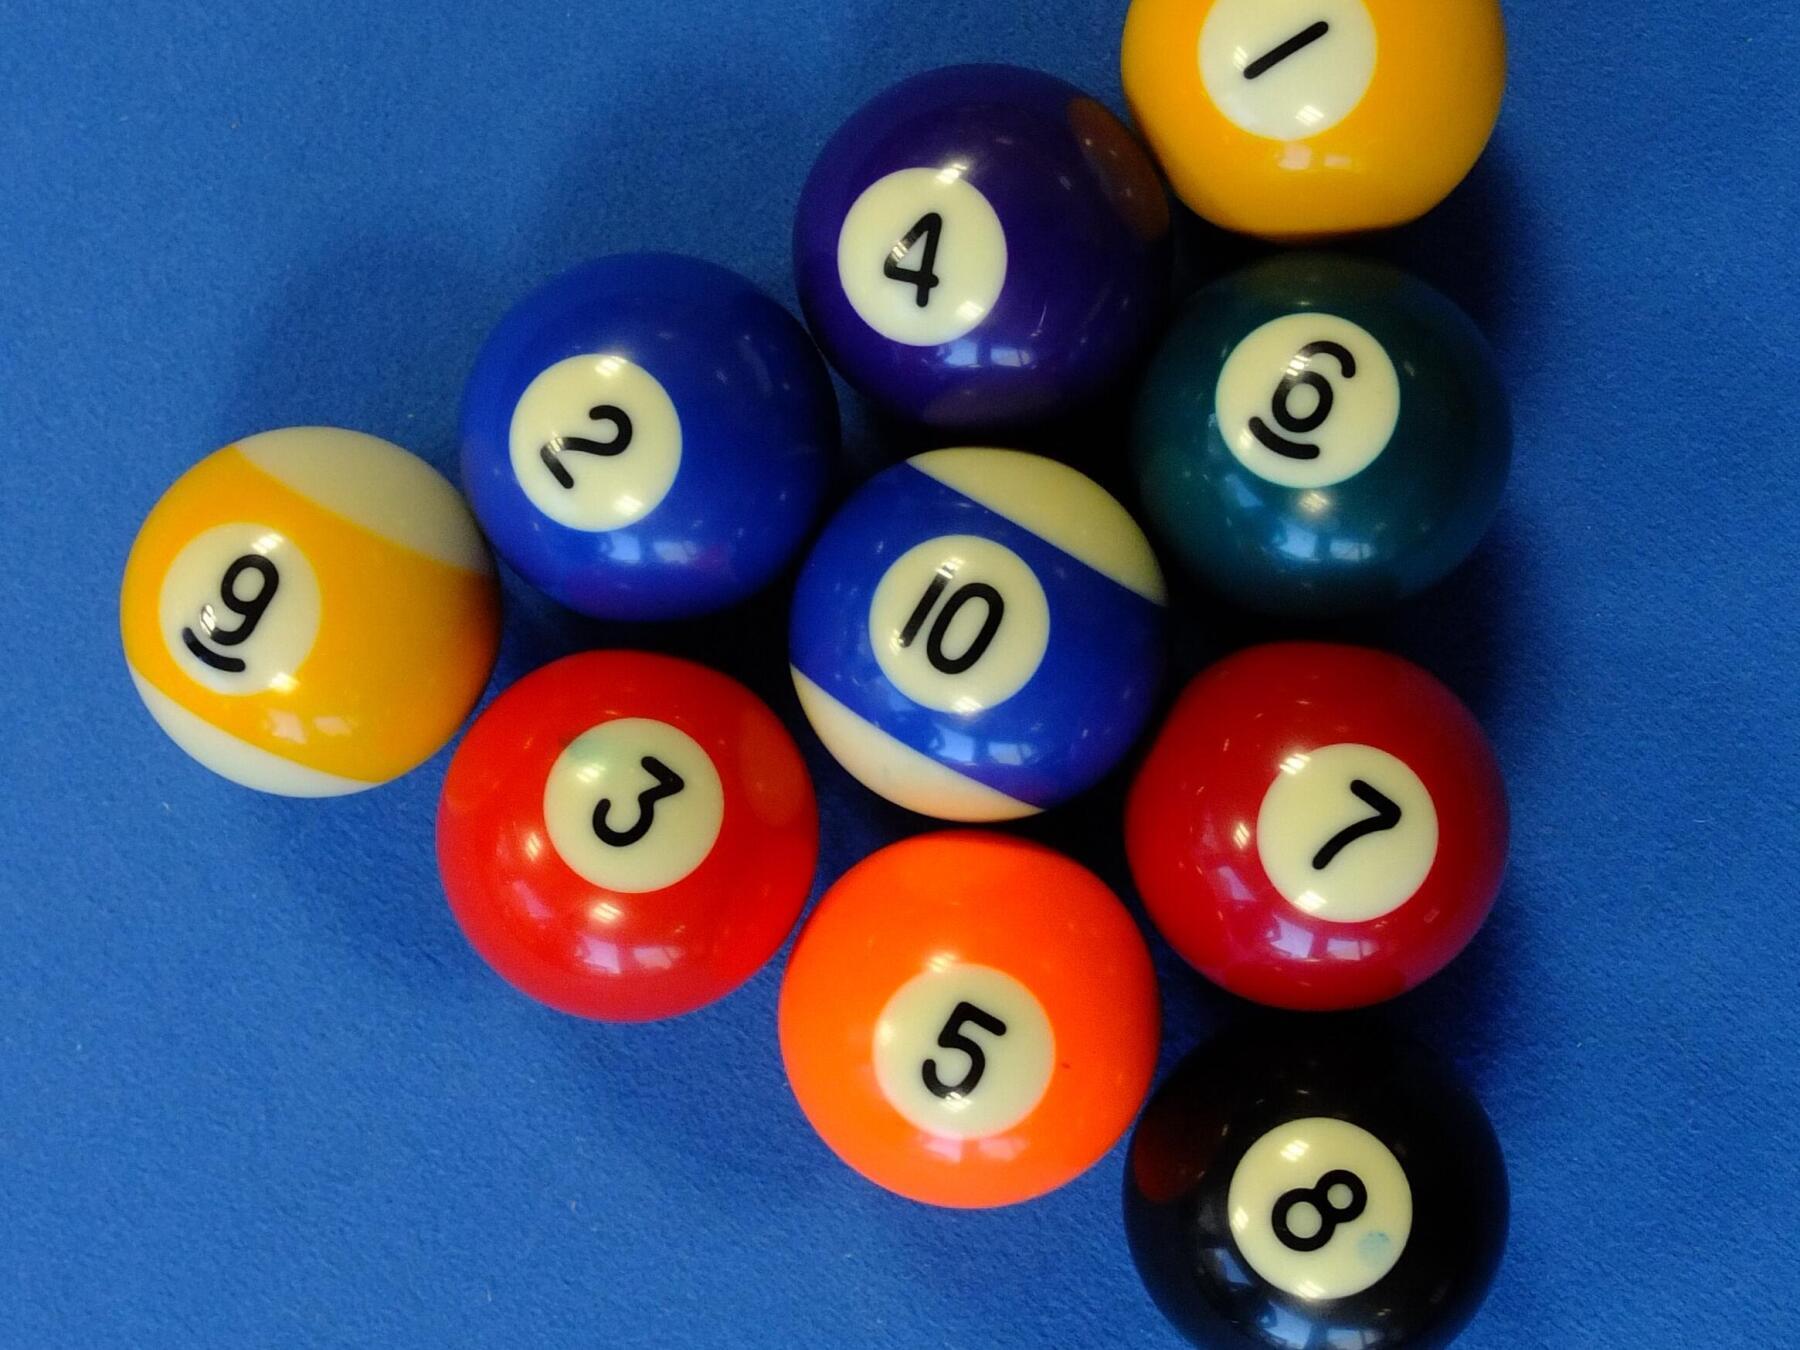  boules numérotées de 1 à 10 sur la table de billard